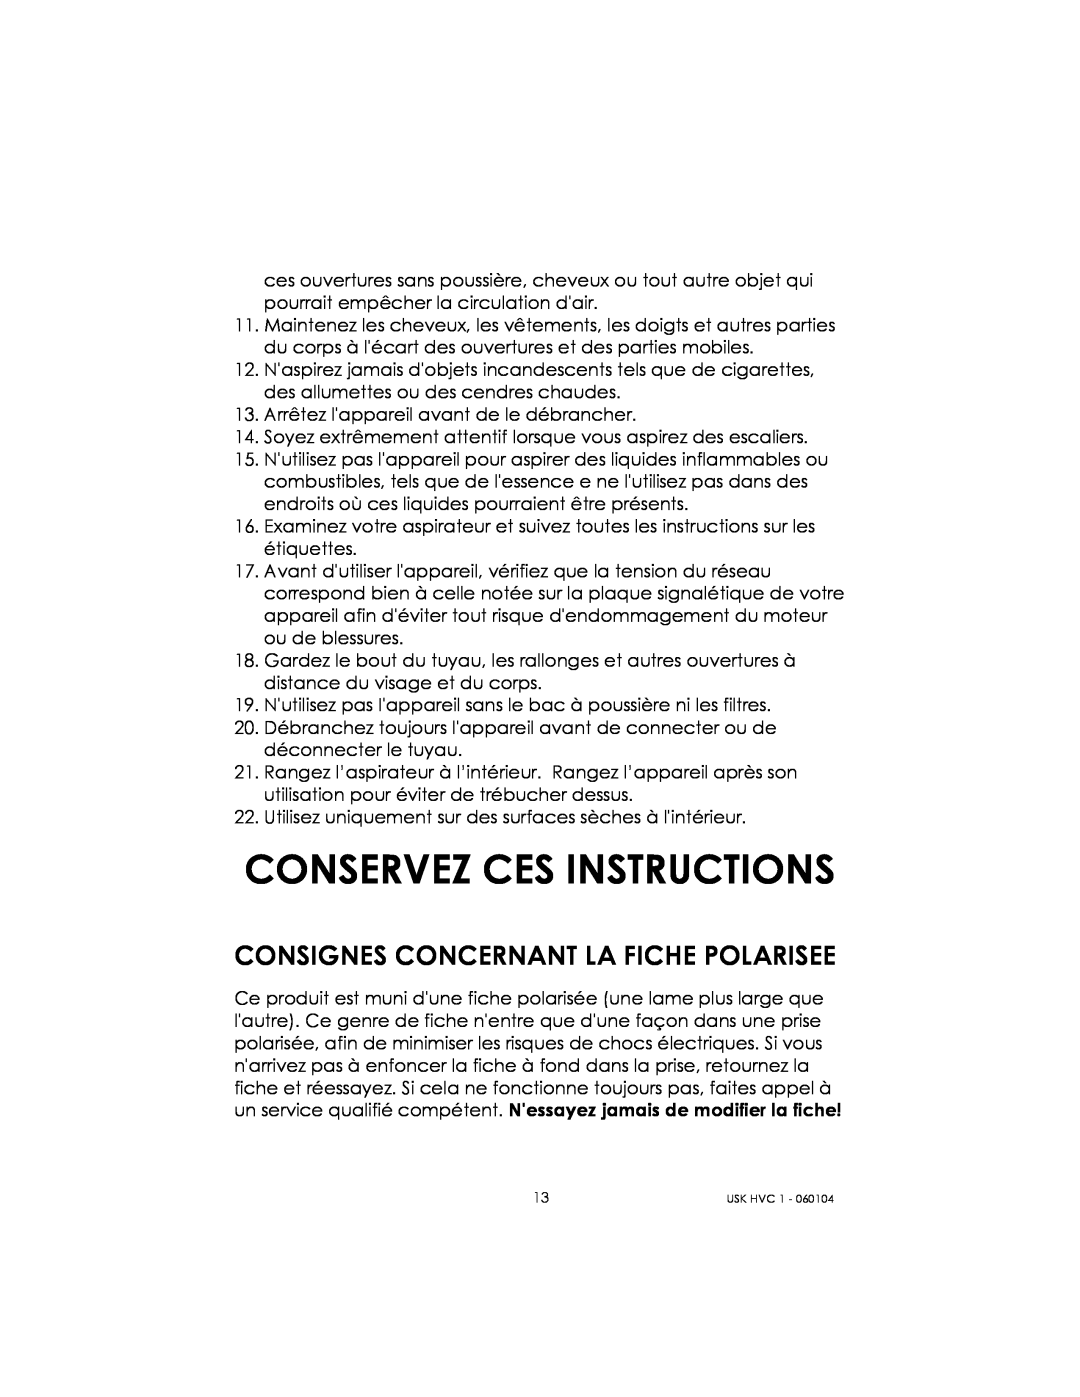 Kalorik USK HVC 1 - 060104 manual Conservez Ces Instructions, Consignes Concernant La Fiche Polarisee 